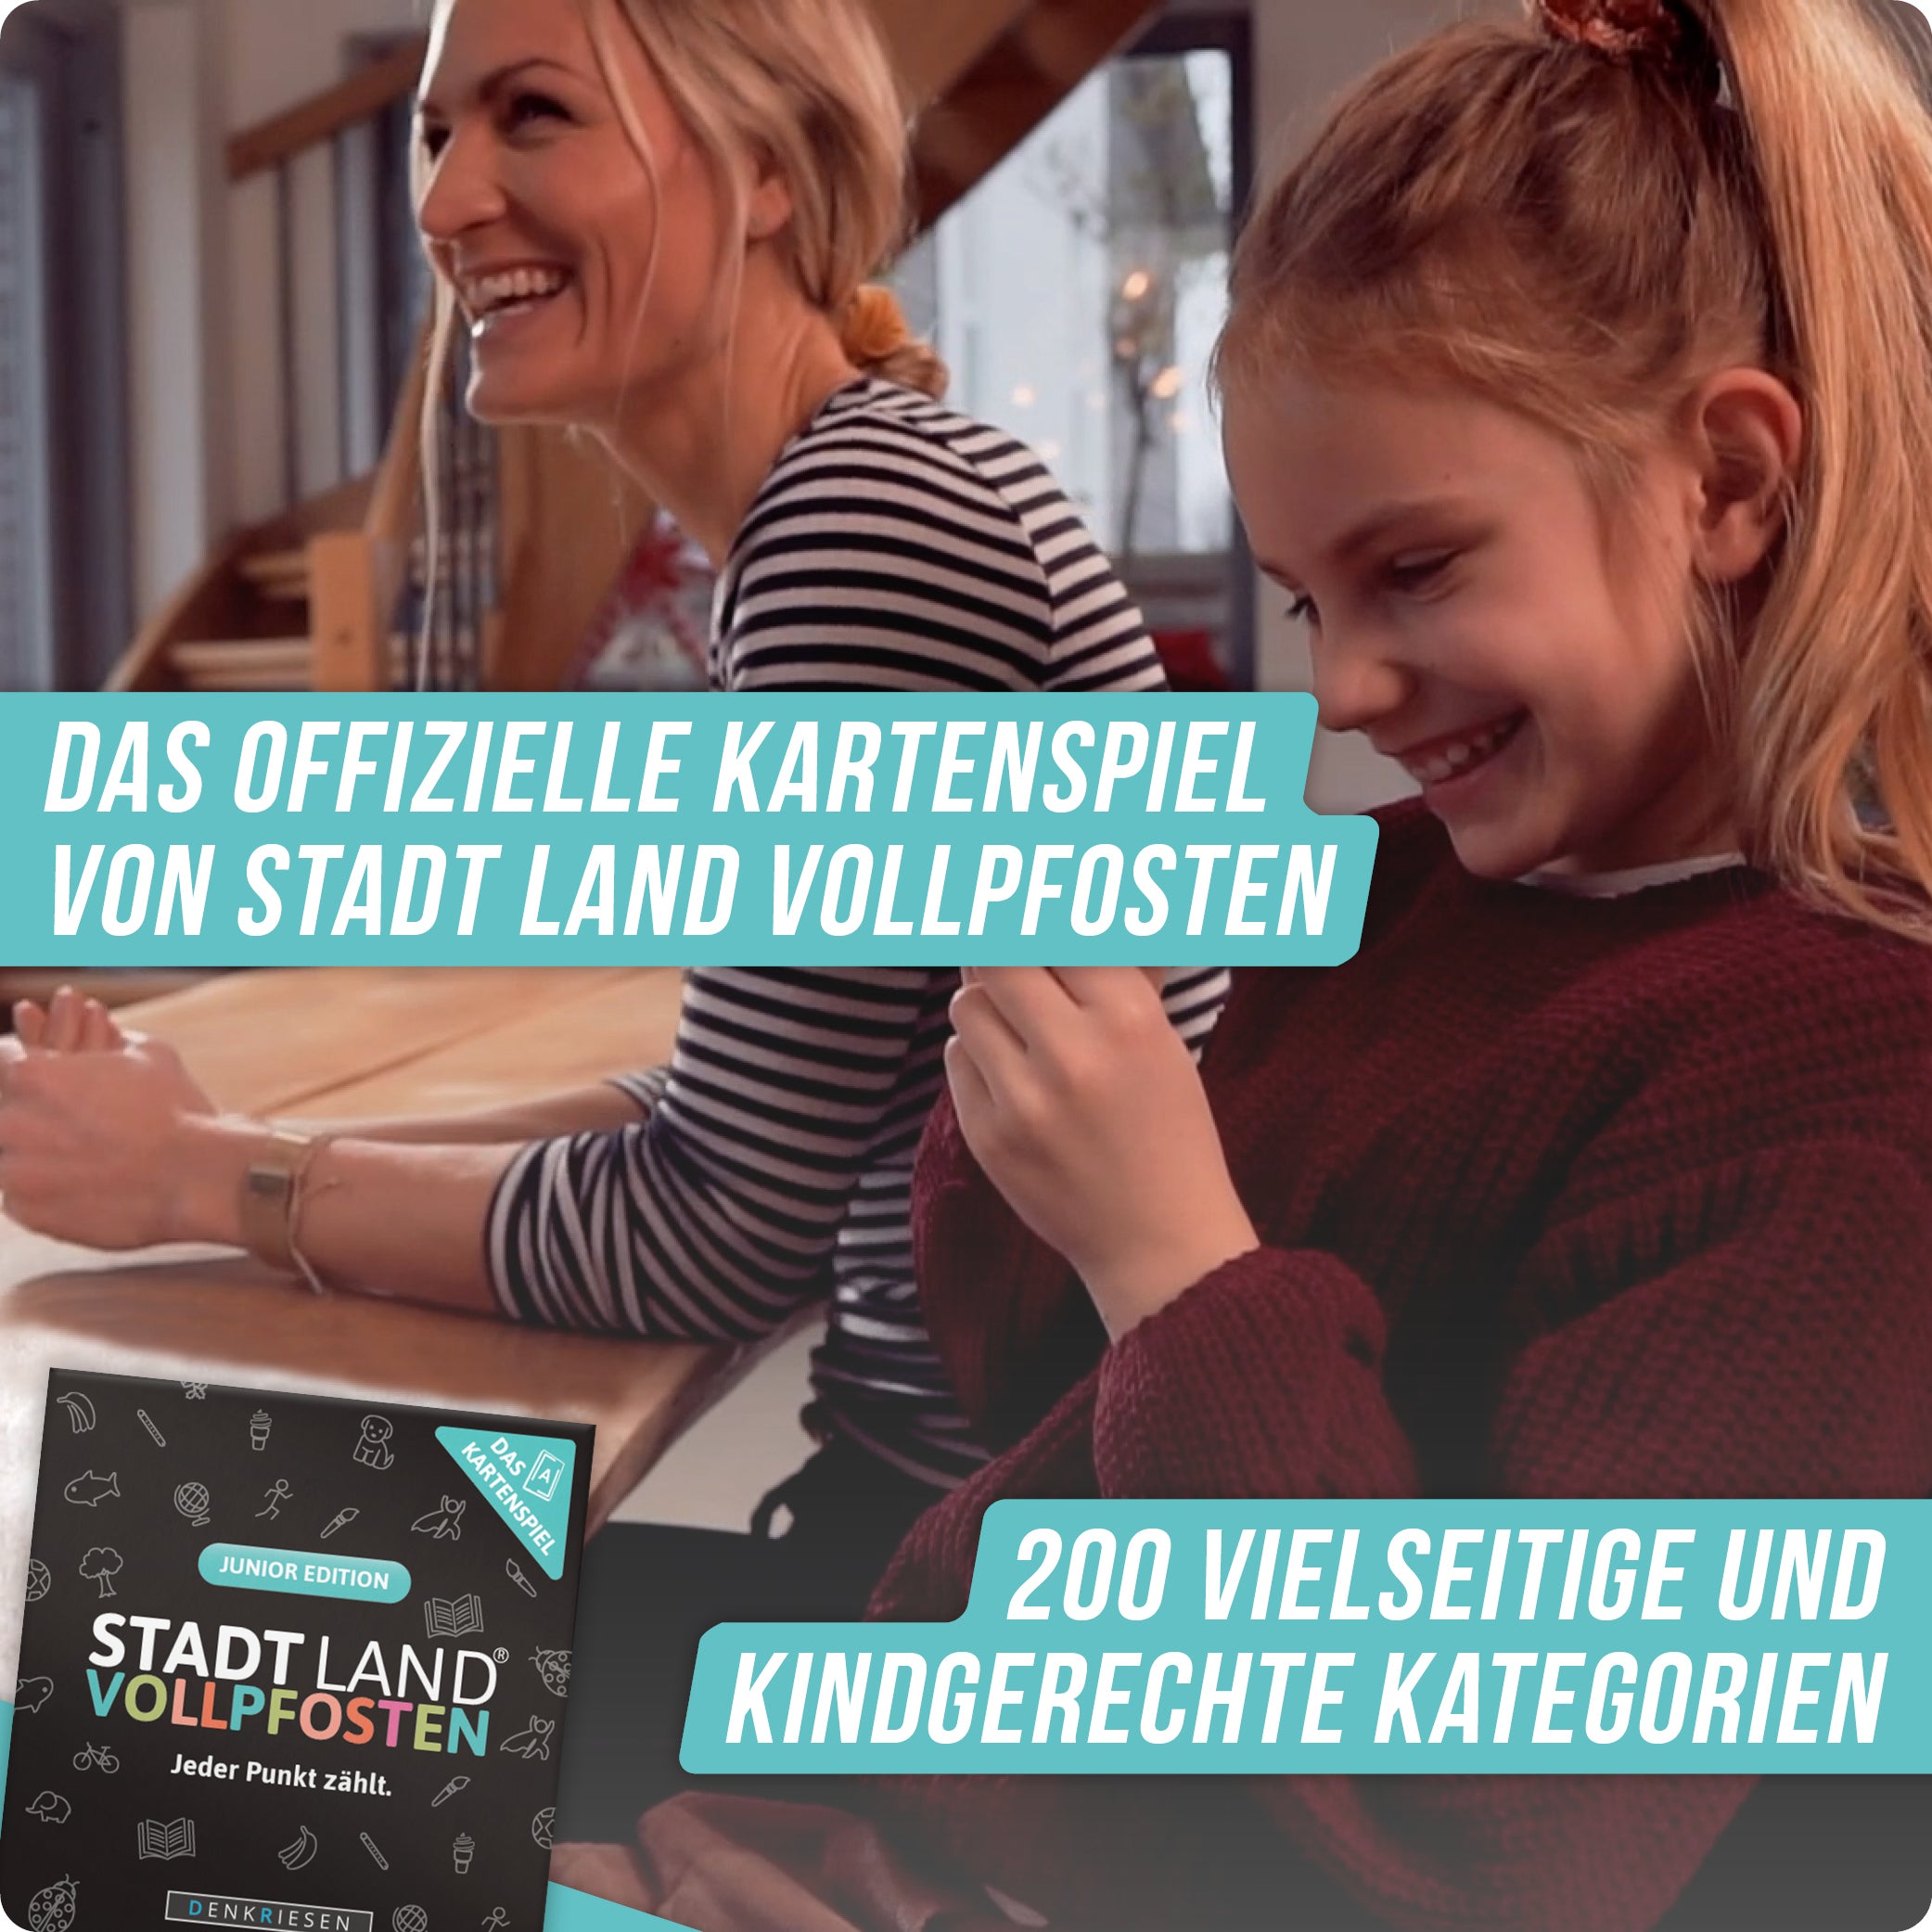 Stadt Land Vollpfosten® Junior Edition – "Jeder Punkt zählt." | Das Kartenspiel